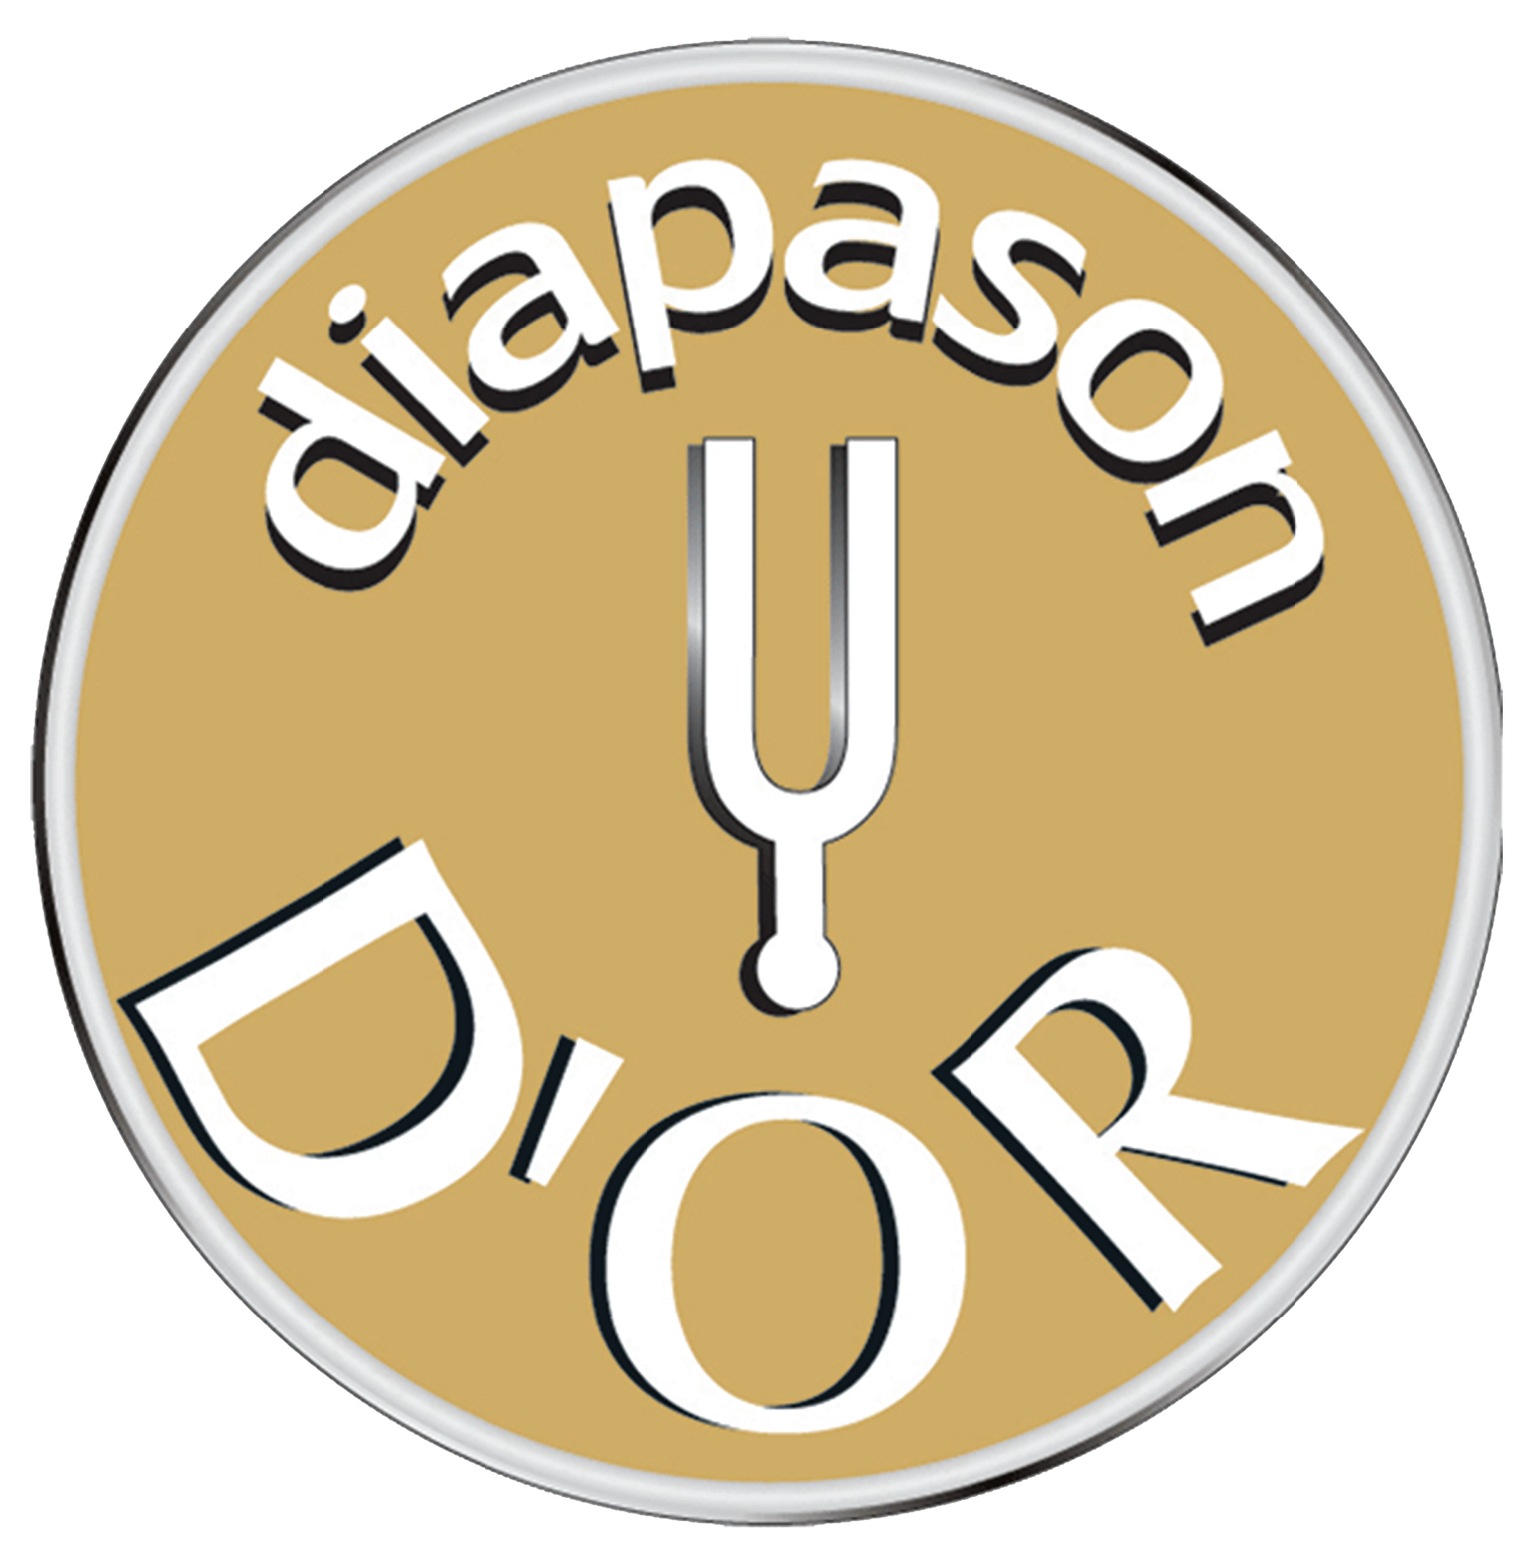 Diapason: 'Diapason d’Or de l’année - Winner Music Contemporaine' (2010)